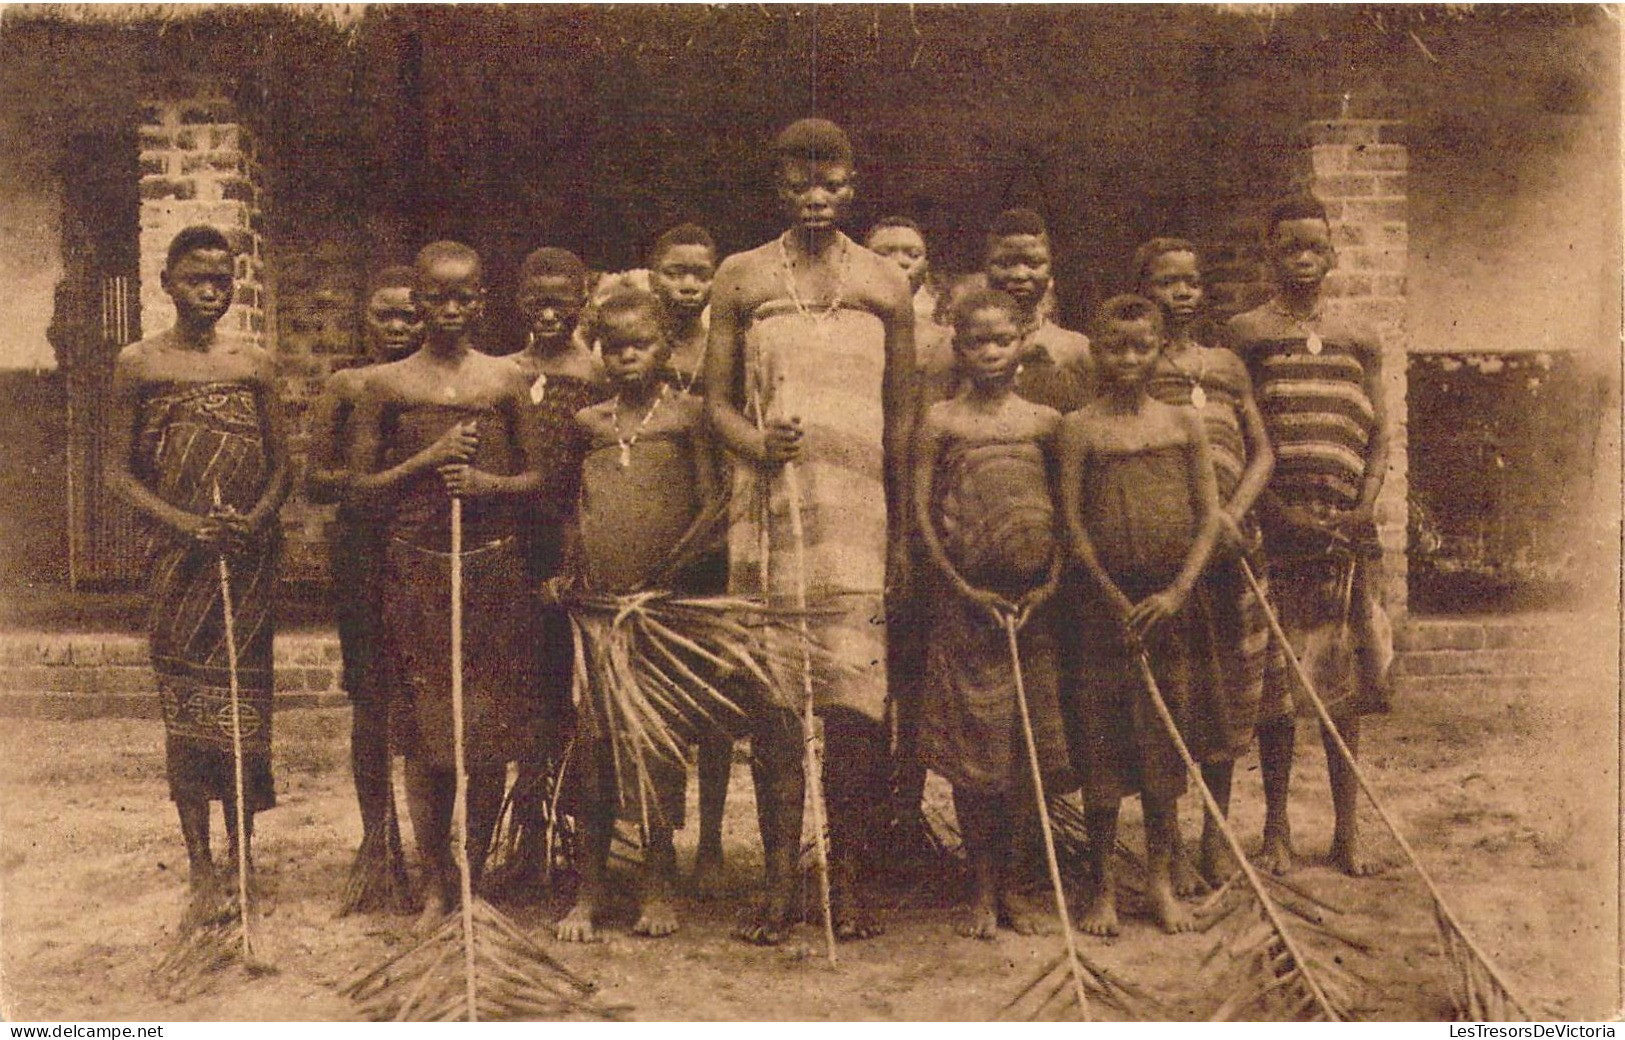 CONGO BELGE - Mission Des Sœurs De Ste-Marie De Namur - Leverville ( Kwango ) - Carte Postale Ancienne - Congo Belge